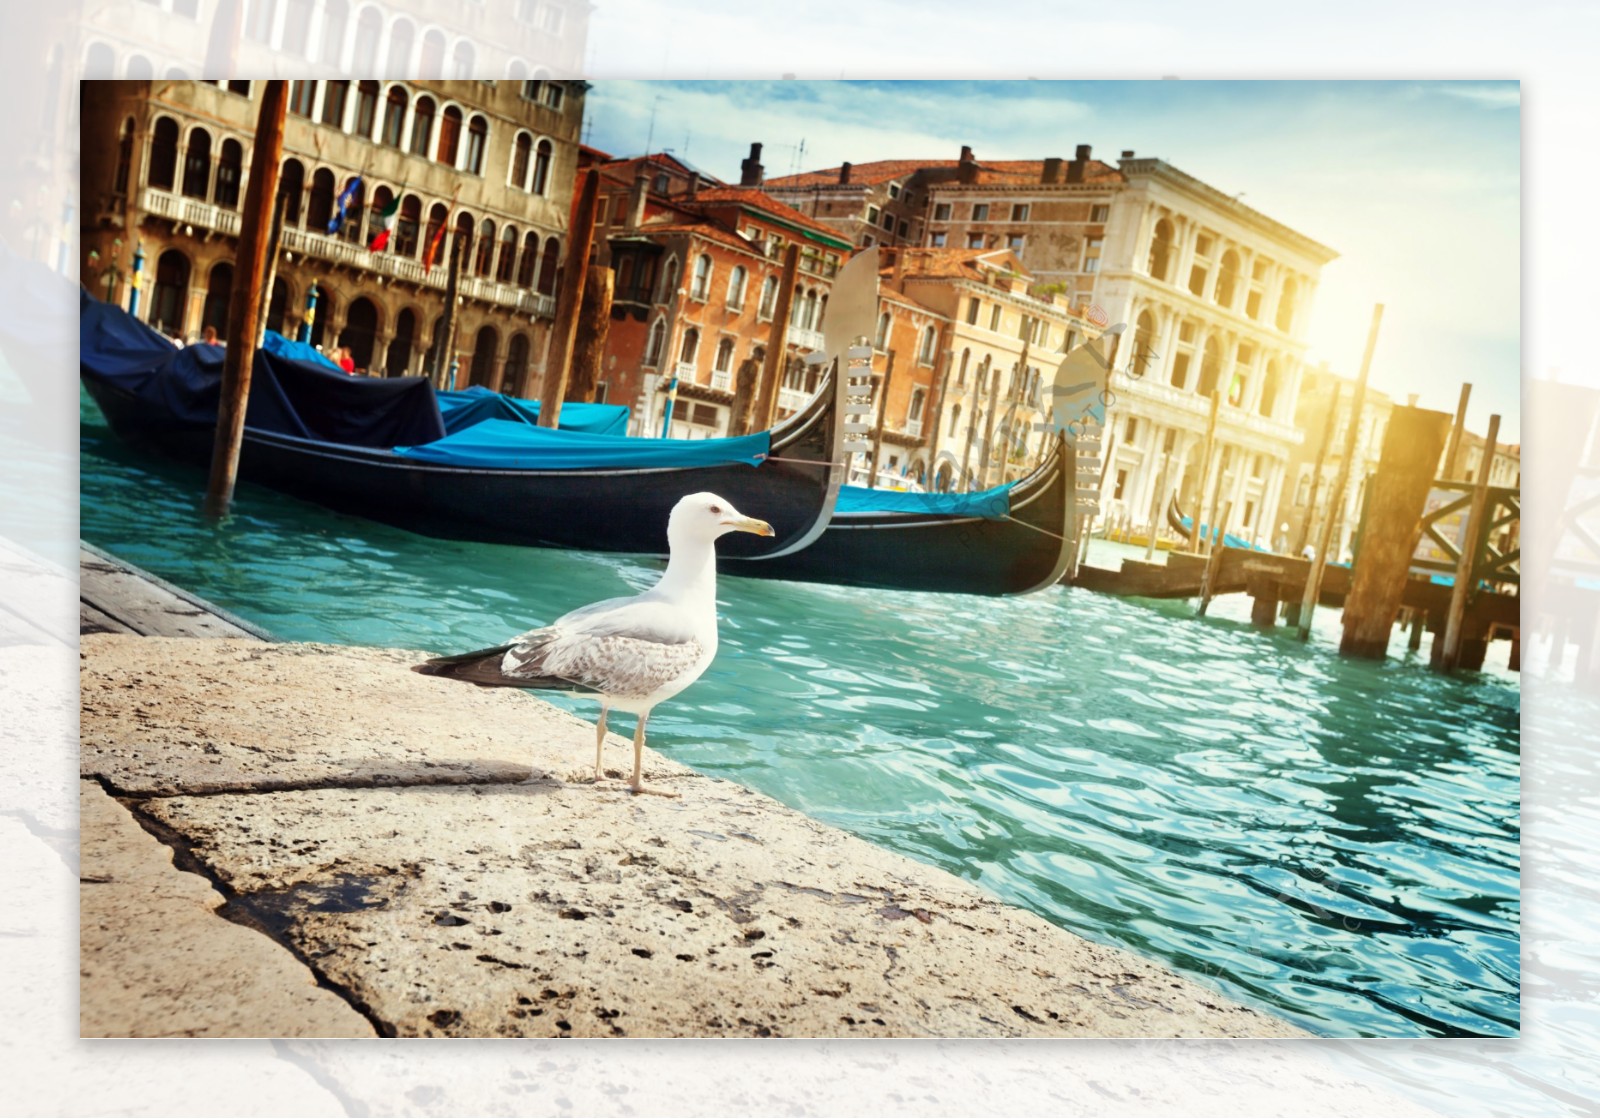 威尼斯的船和建筑景色图片